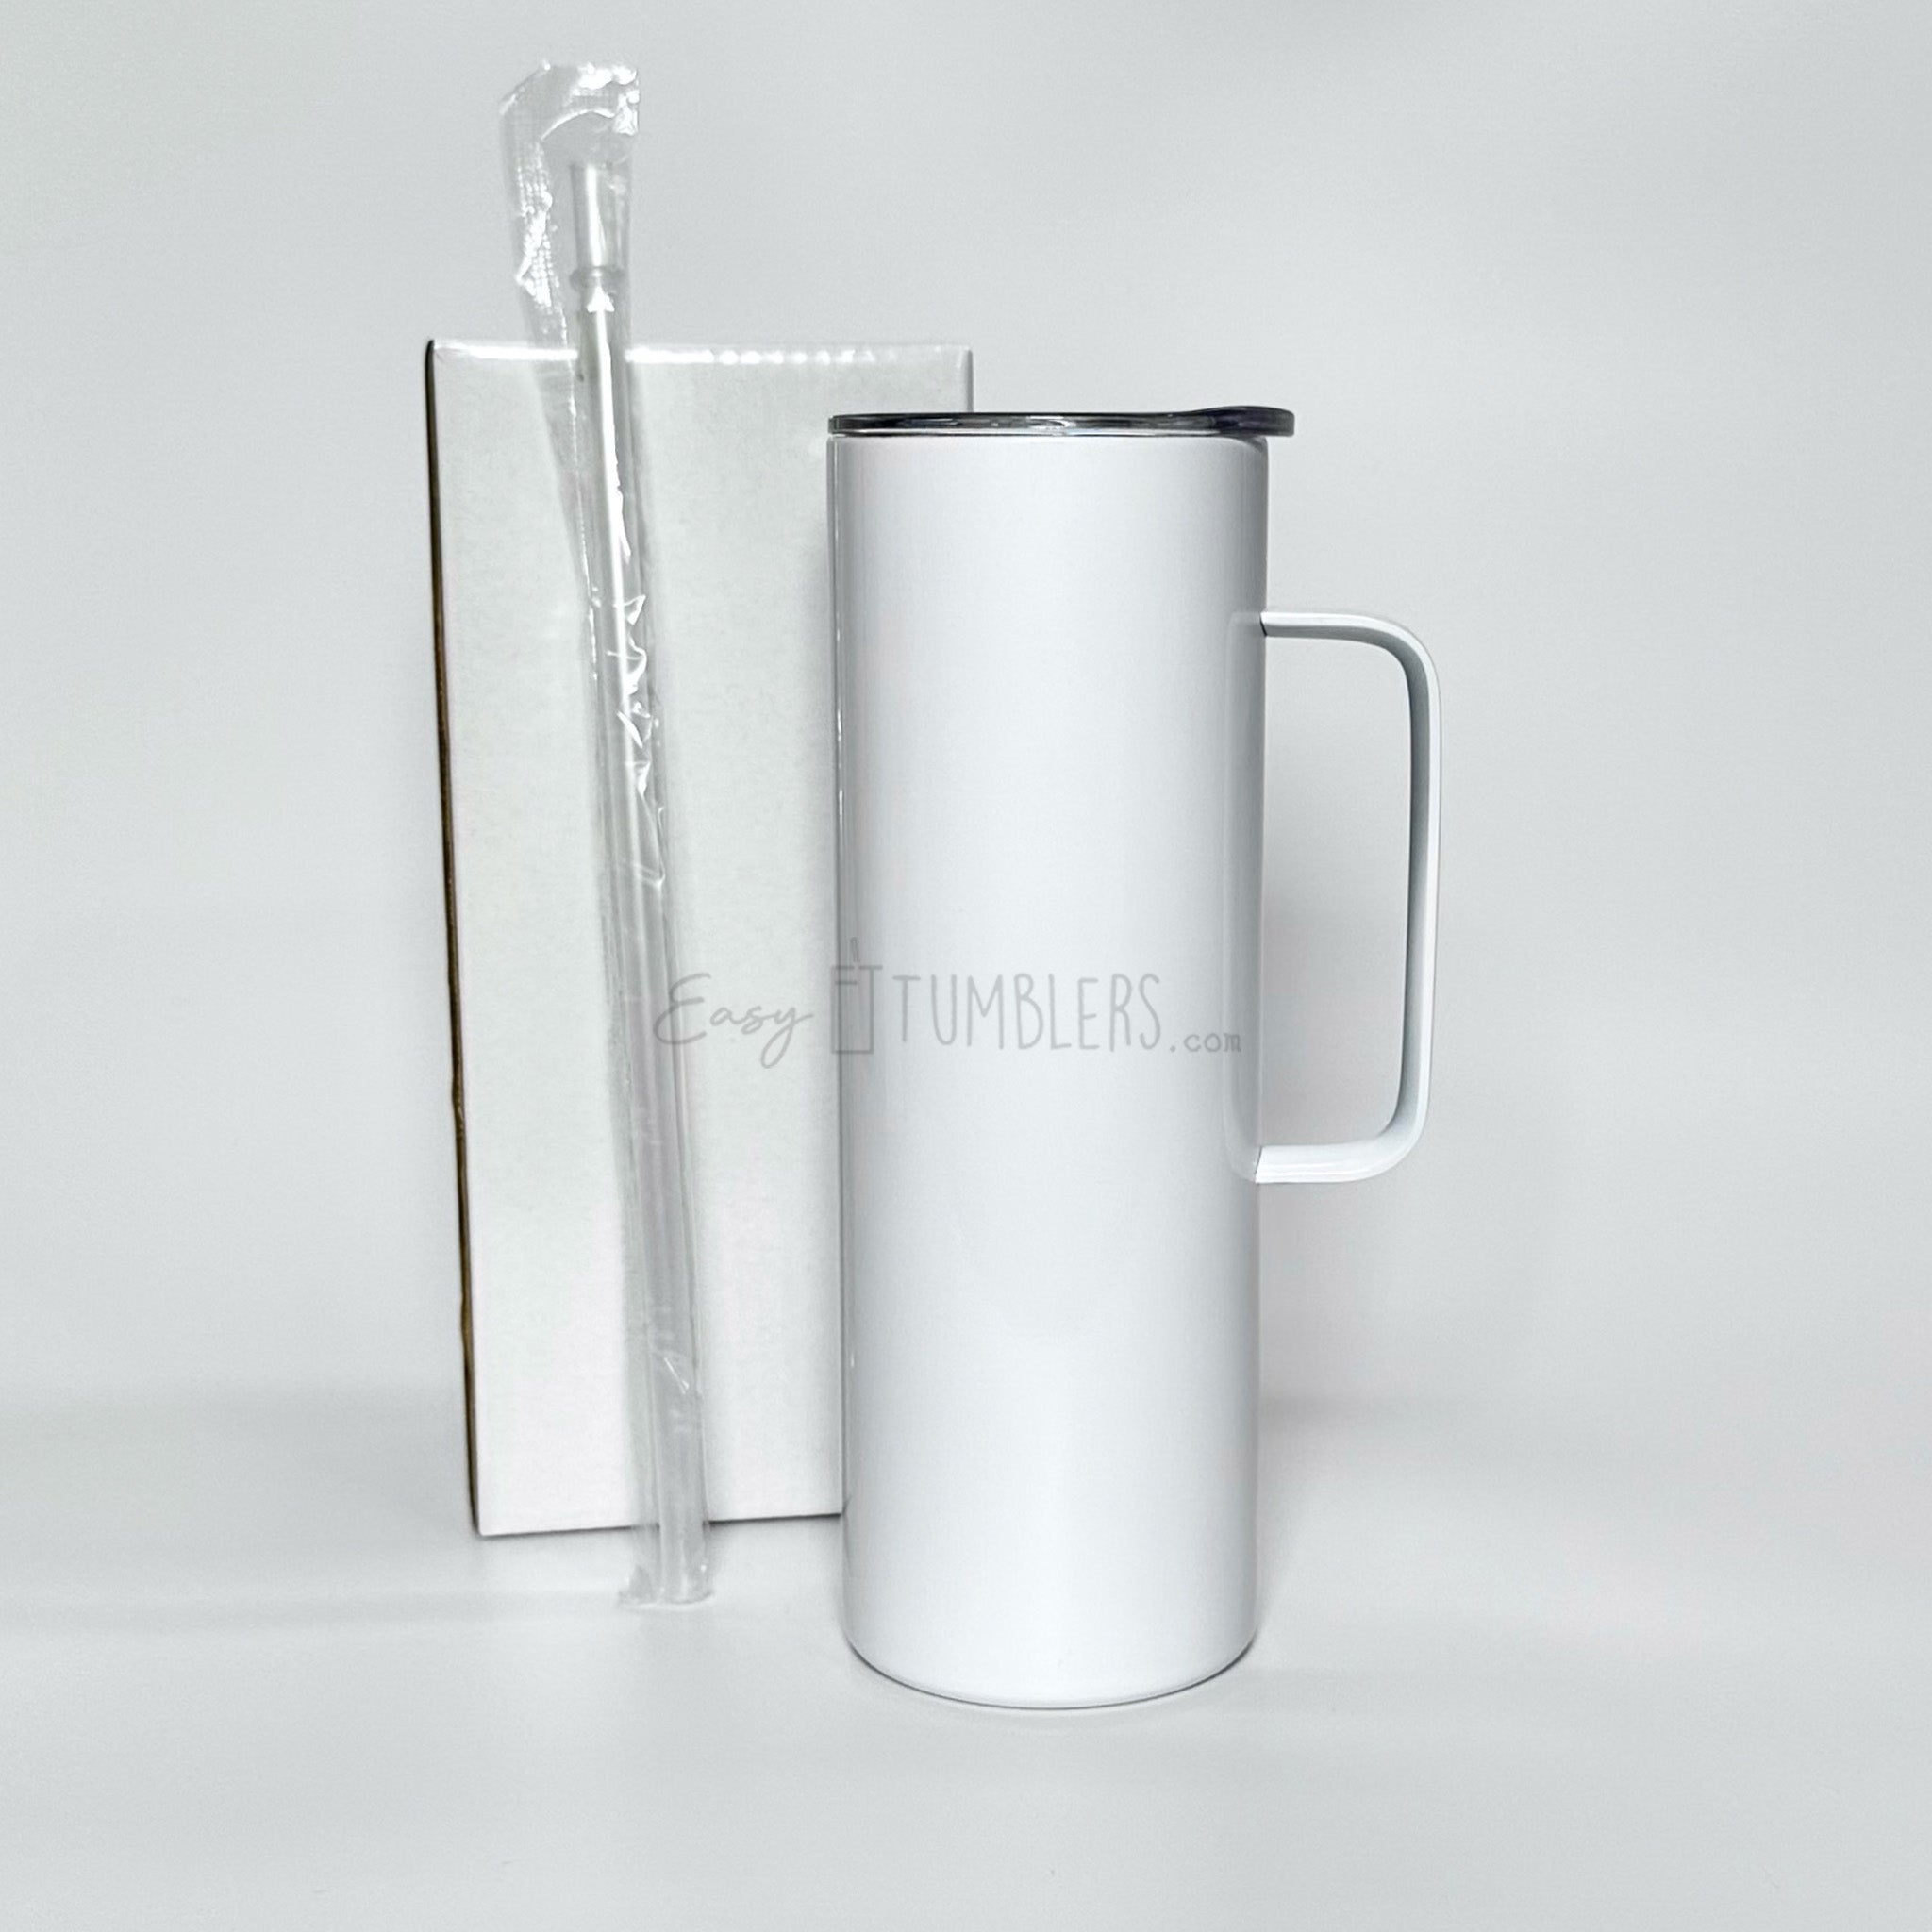 20 oz Insulated Mug – Blank Sublimation Mugs